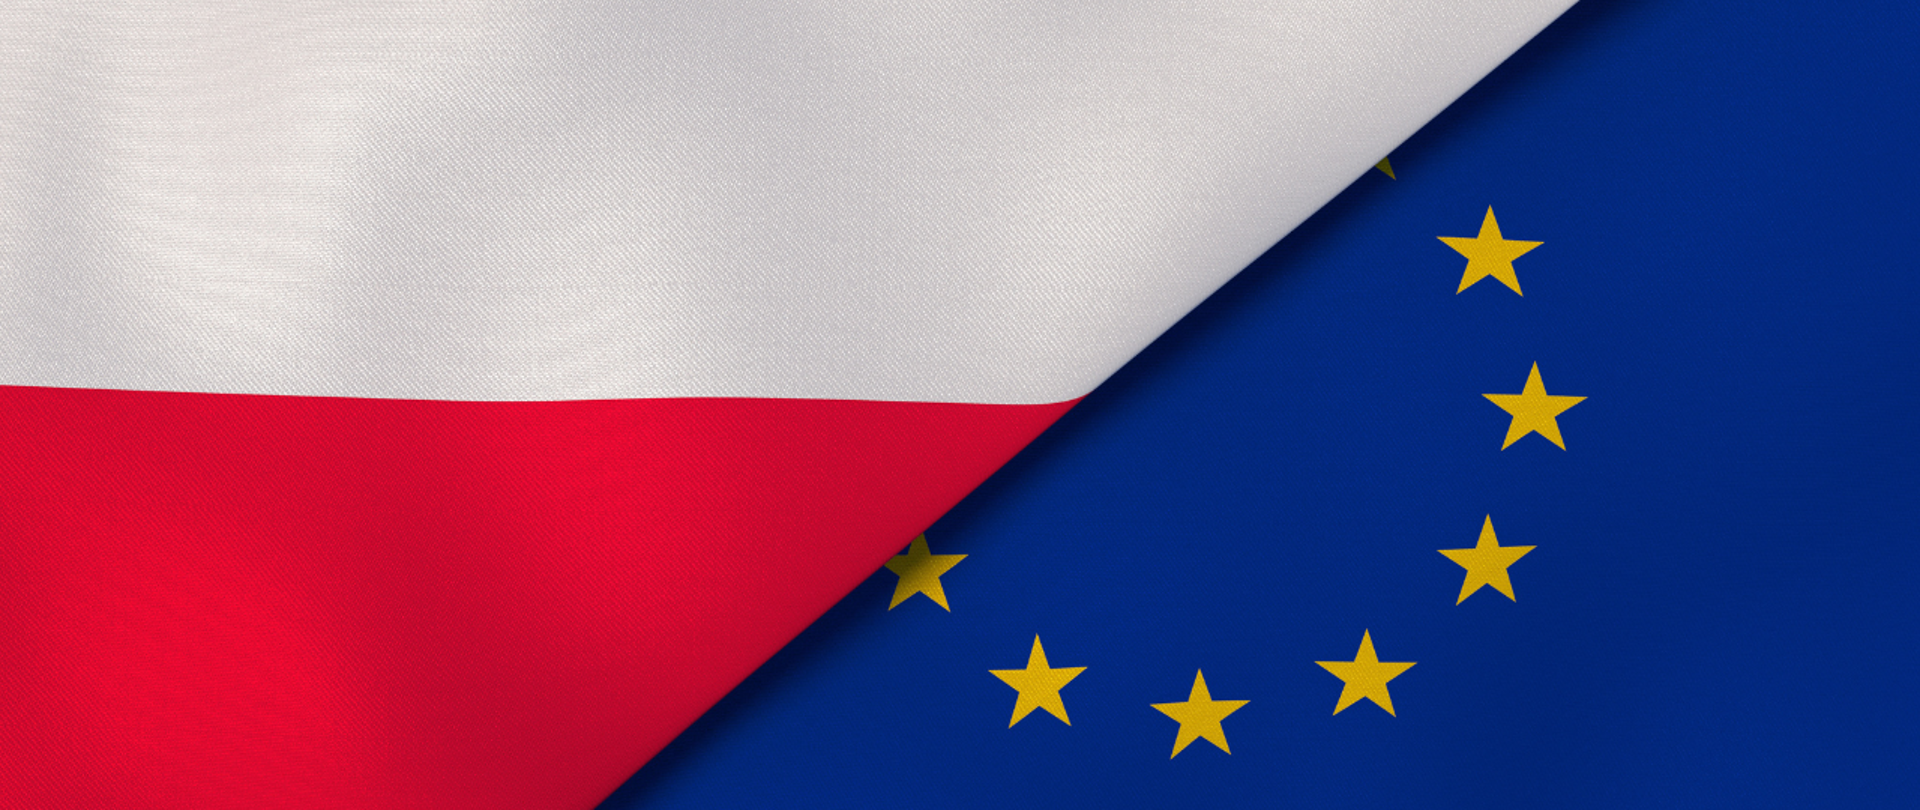 Flagi Polski i Unii Europejskiej.